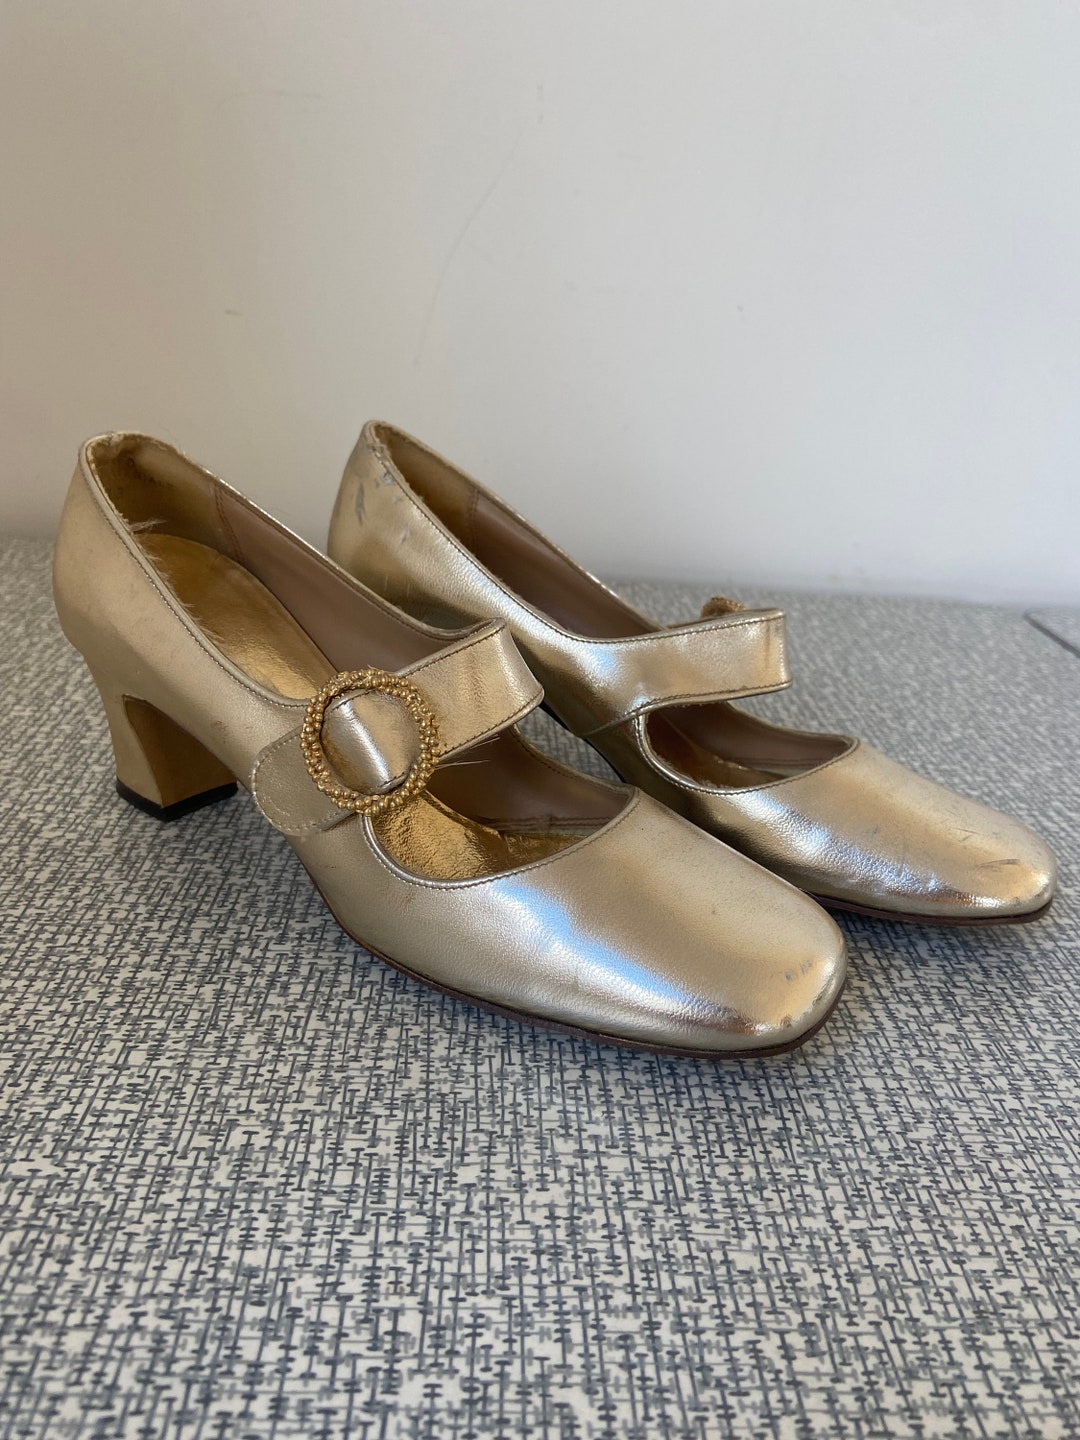 Vintage Women's Shoes Size 5.5 Gold Pumps Mod Style - Etsy